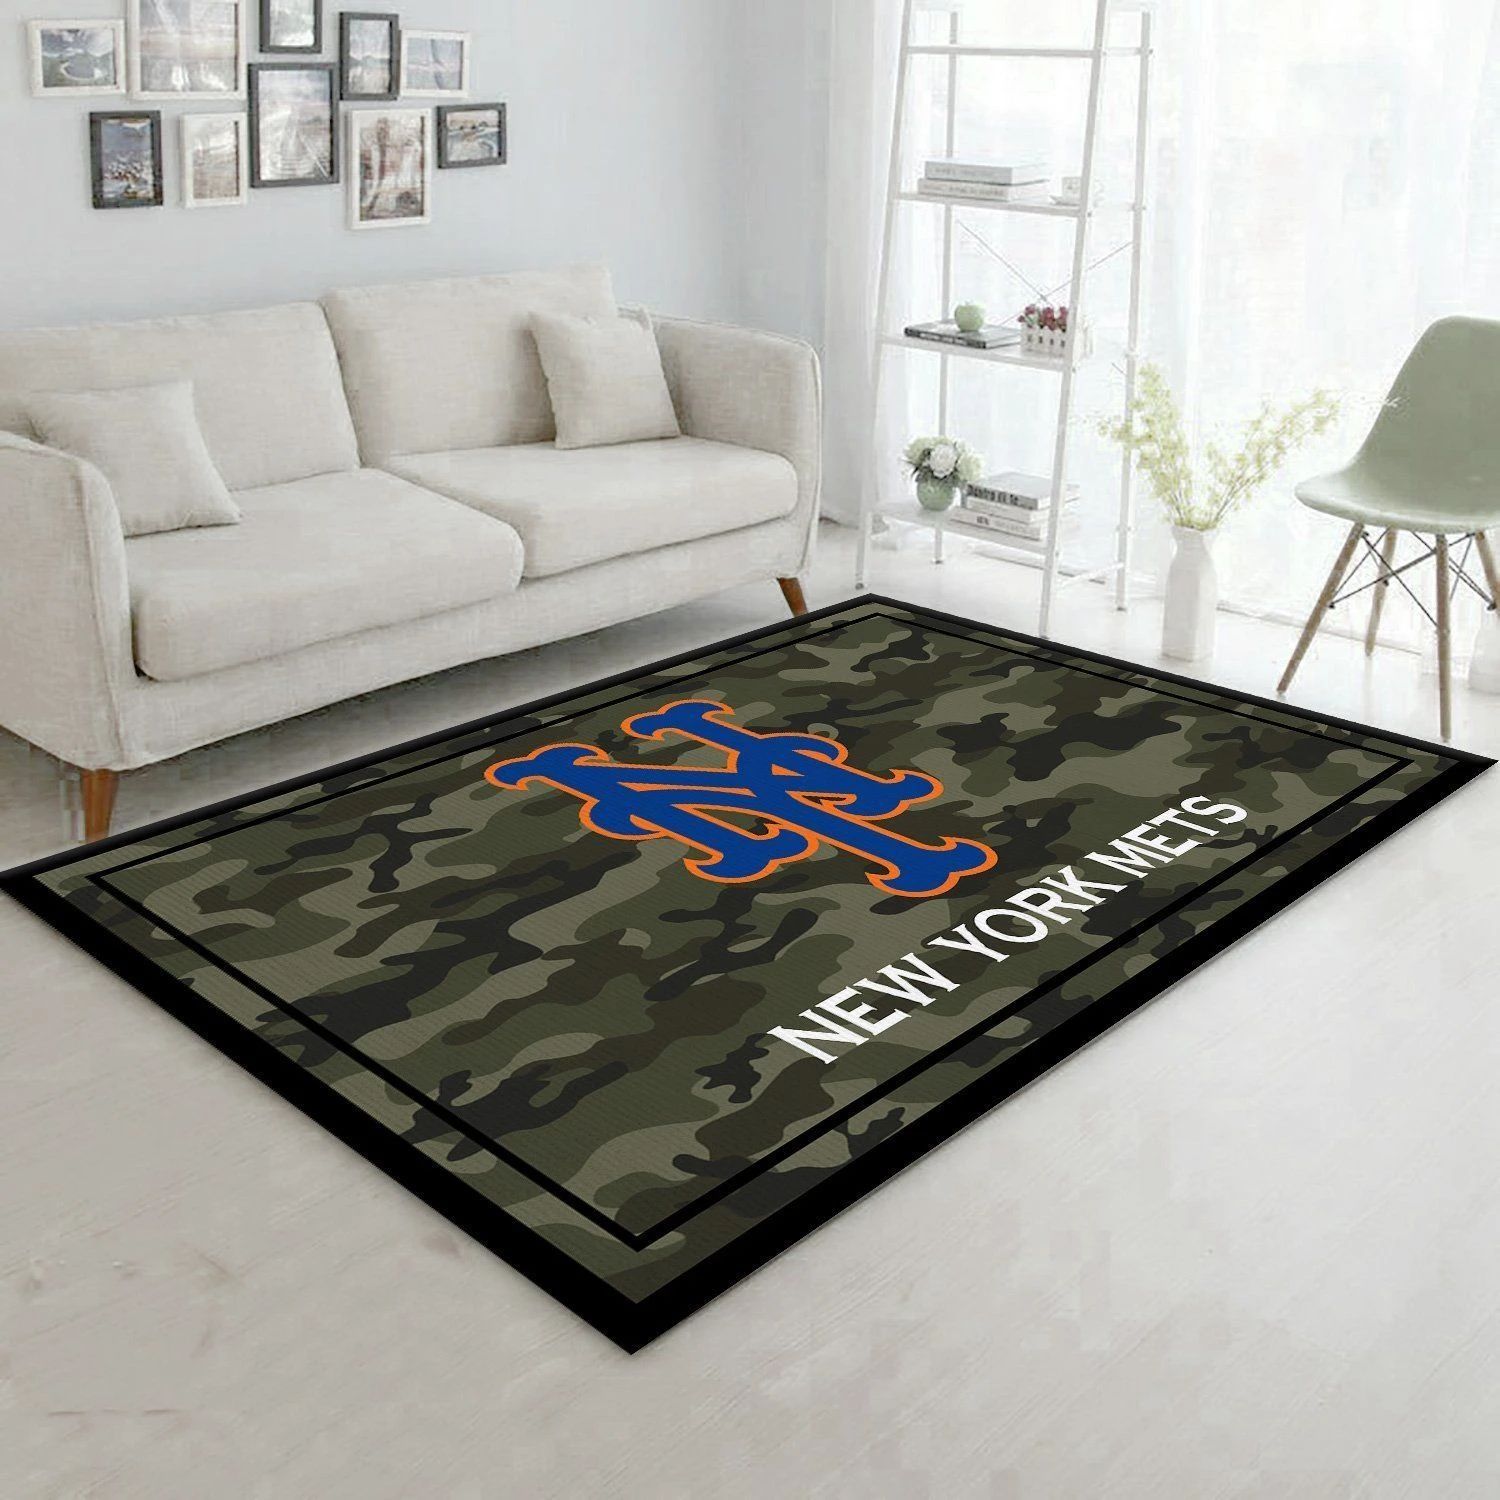 New York Mets MLB Baseball Area Rug MLB251089 Baseball Floor Decor The US Decor - Indoor Outdoor Rugs 1